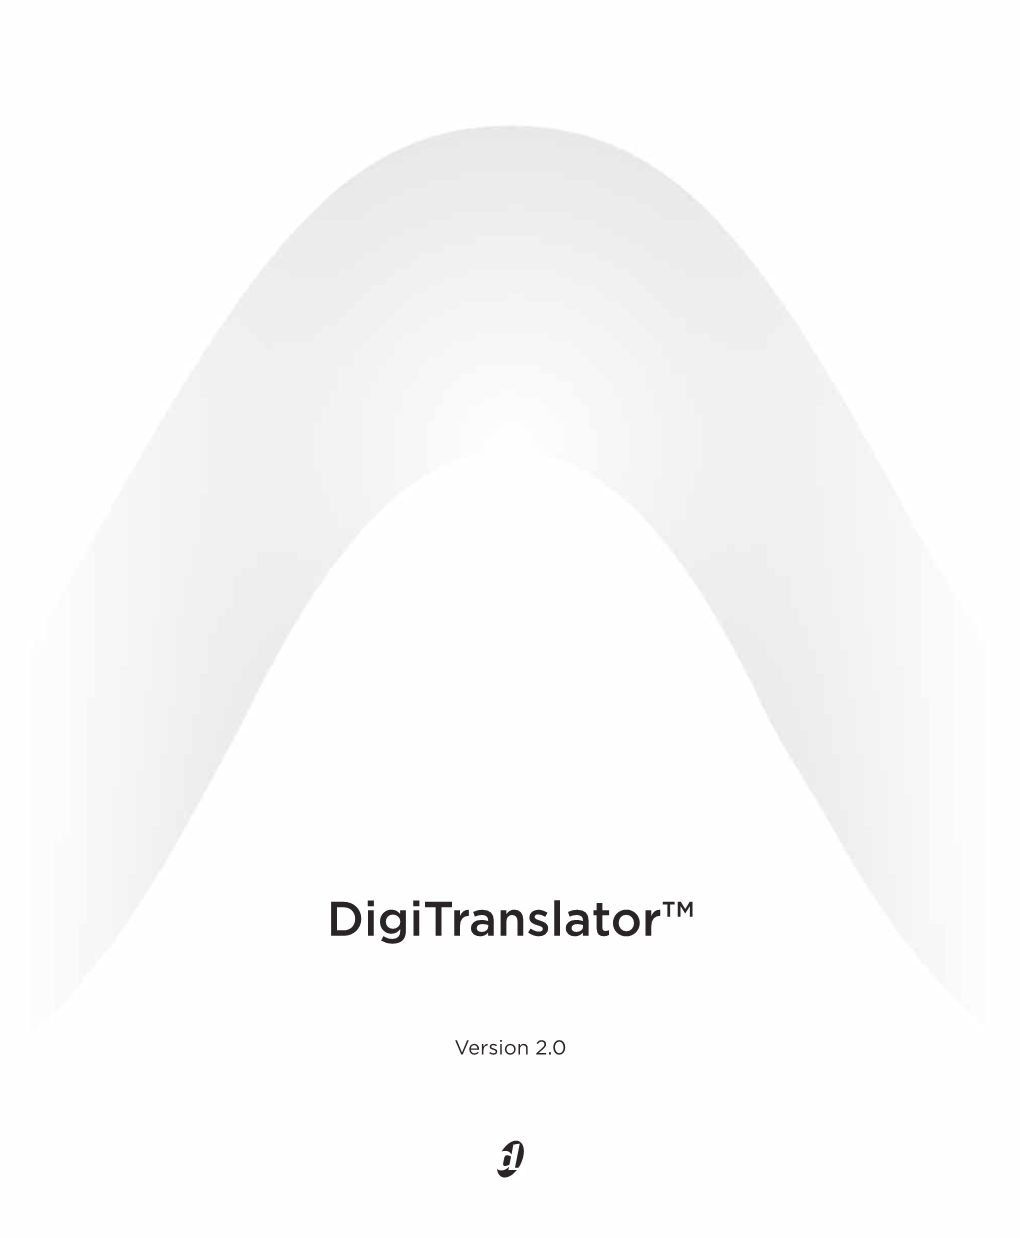 Digitranslator Guide